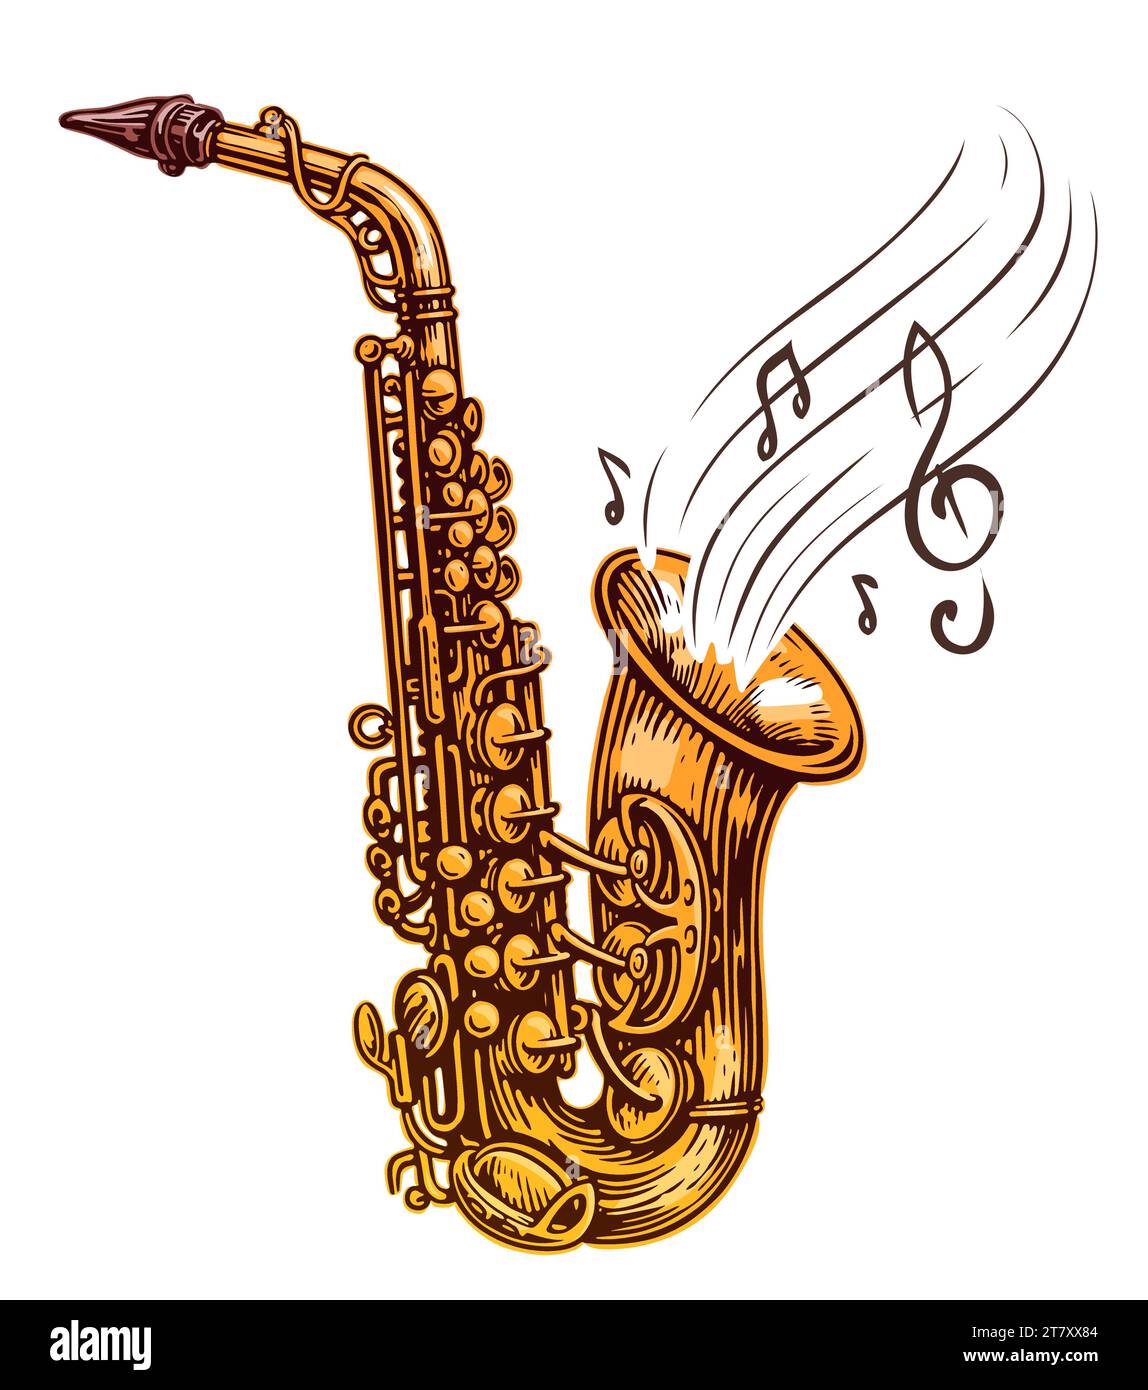 Instrument de musique saxophone avec des notes de musique sortant, illustration isolée sur fond blanc Illustration de Vecteur